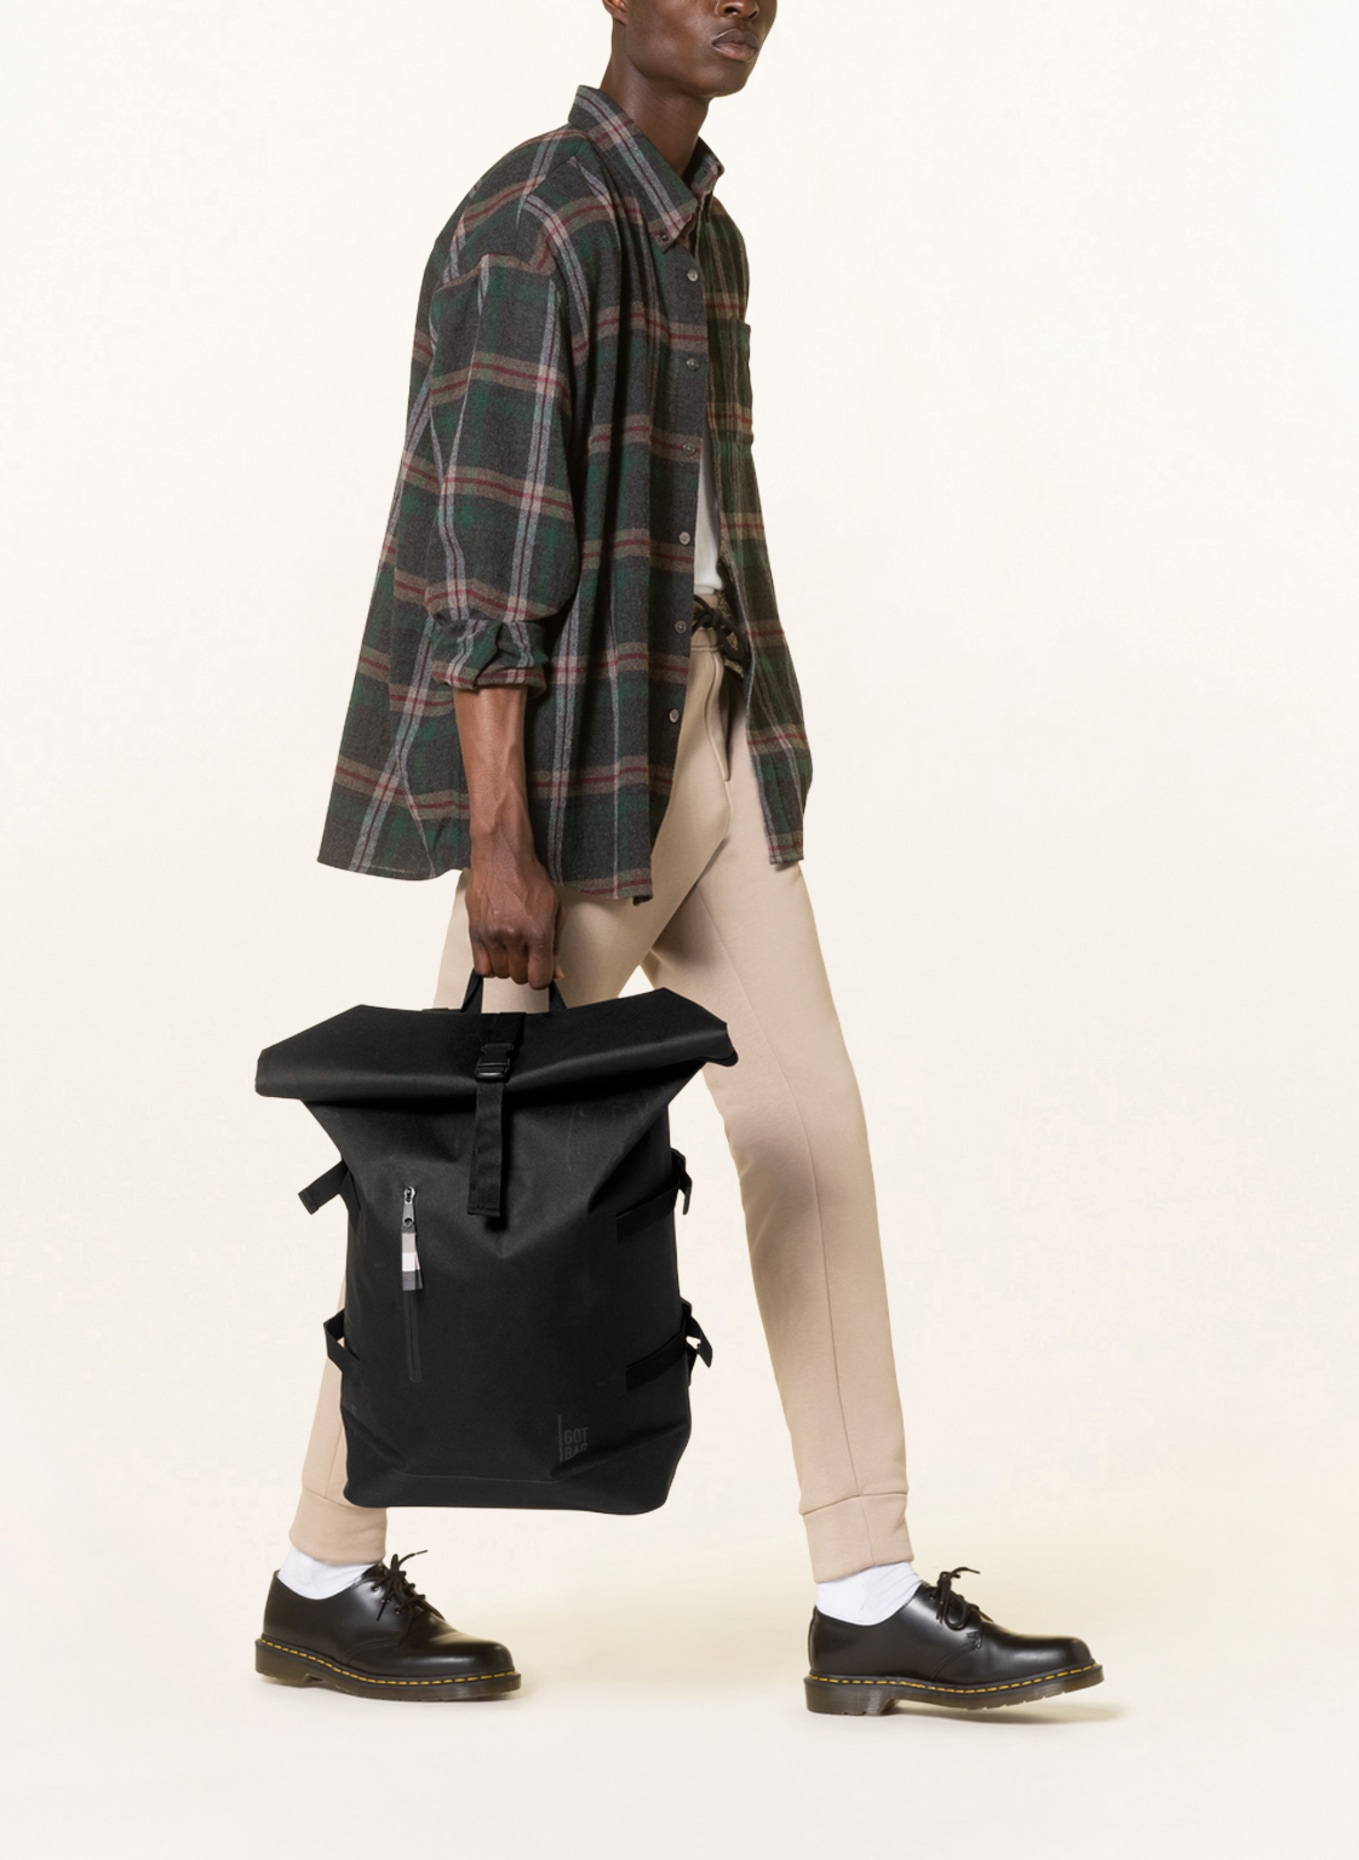 GOT BAG Backpack ROLLTOP, Color: BLACK (Image 4)